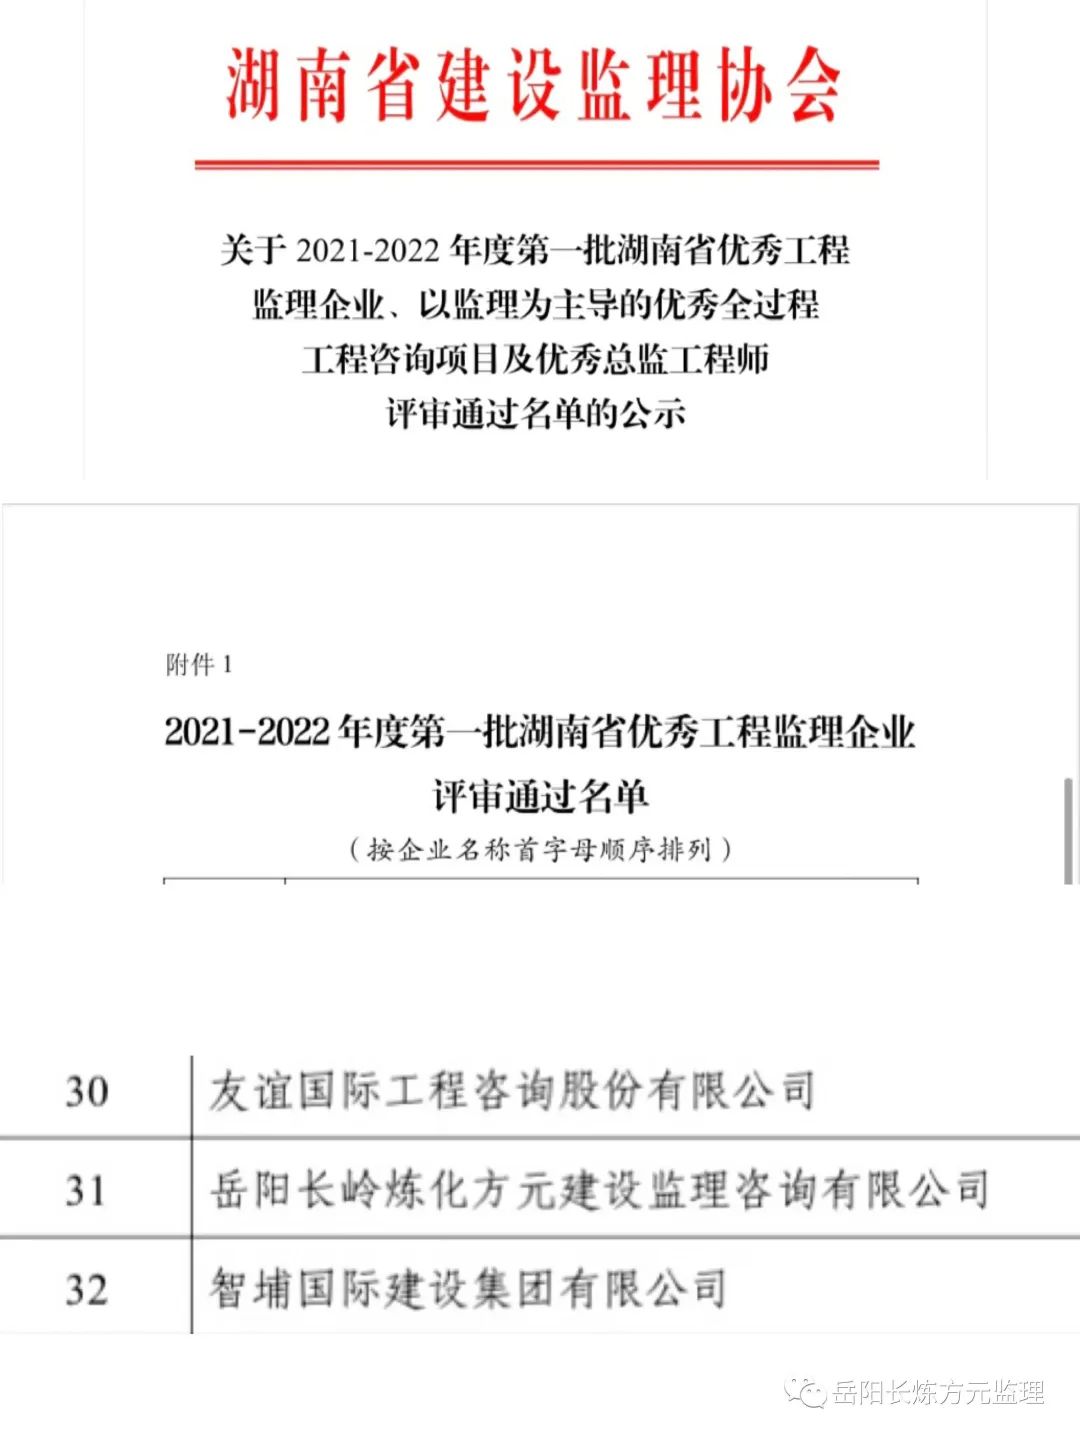 我公司被评为2021-2022年度第一批湖南省优秀工程监理企业